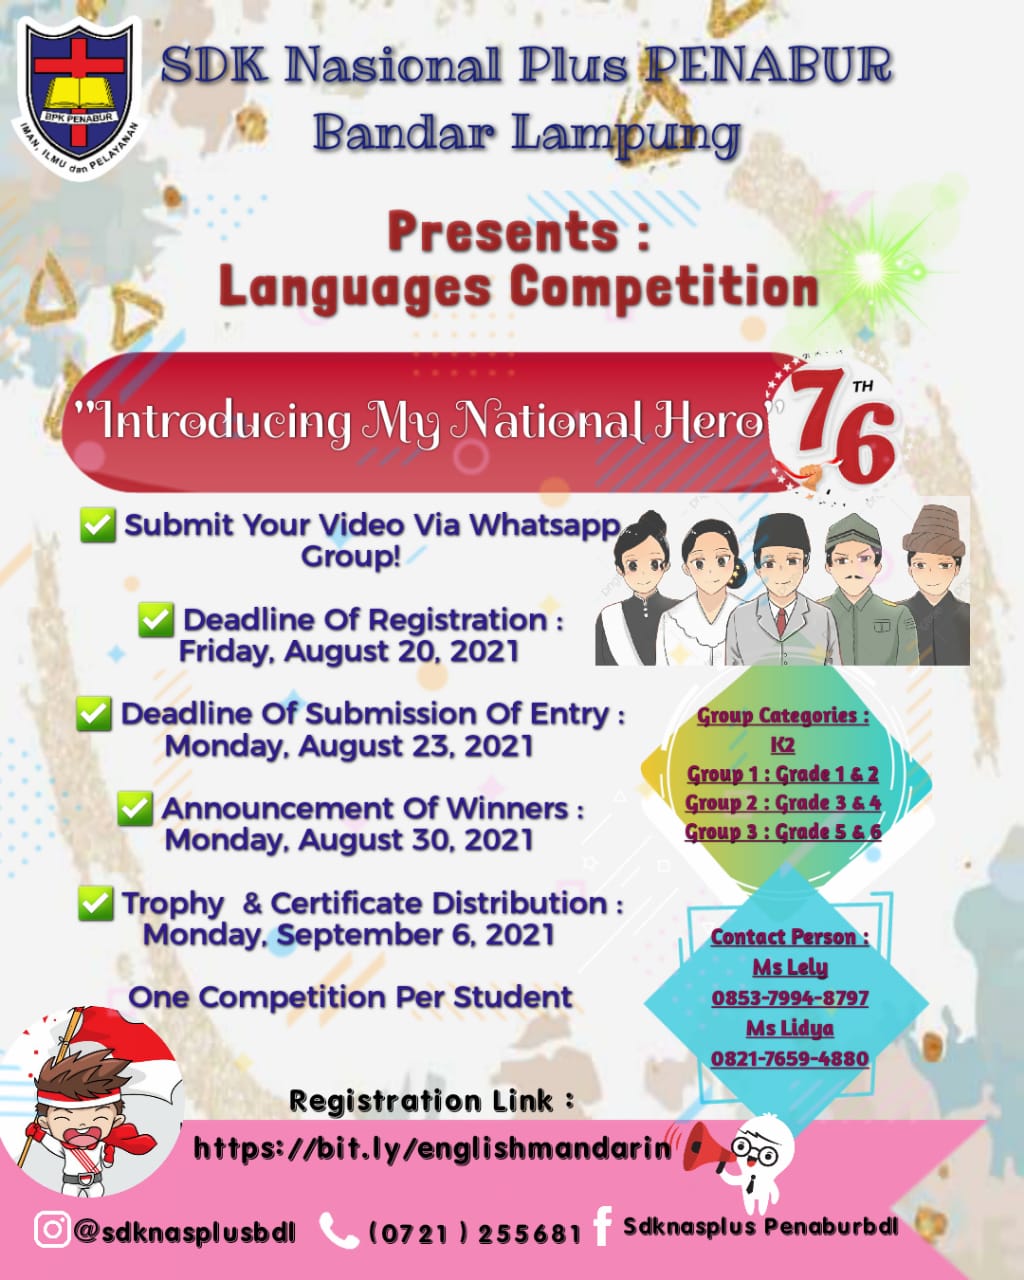 Languages Competition SDK NASIONAL PLUS PENABUR Bandar Lampung